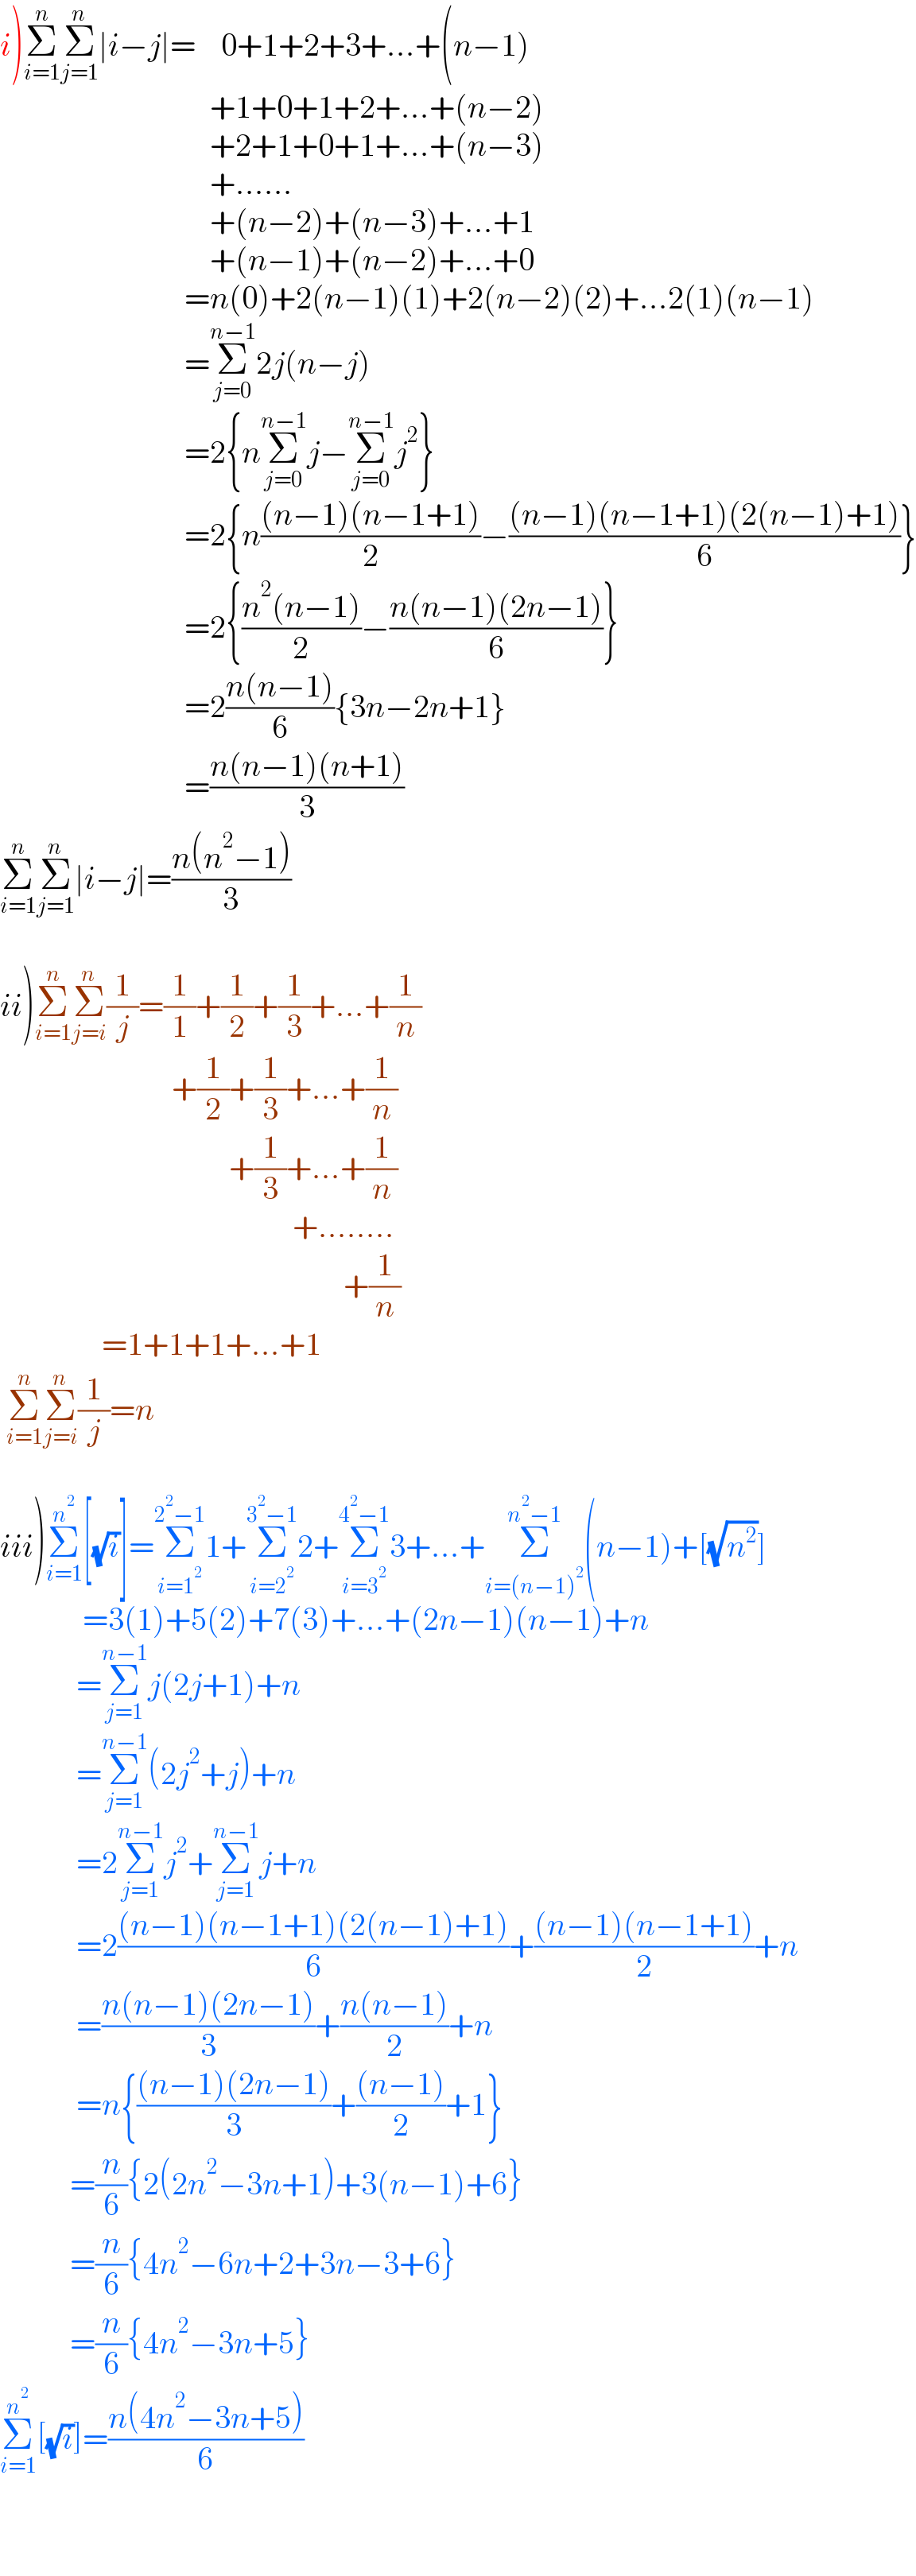 i)Σ_(i=1) ^n Σ_(j=1) ^n ∣i−j∣=    0+1+2+3+...+(n−1)                                   +1+0+1+2+...+(n−2)                                   +2+1+0+1+...+(n−3)                                   +......                                   +(n−2)+(n−3)+...+1                                   +(n−1)+(n−2)+...+0                               =n(0)+2(n−1)(1)+2(n−2)(2)+...2(1)(n−1)                               =Σ_(j=0) ^(n−1) 2j(n−j)                               =2{nΣ_(j=0) ^(n−1) j−Σ_(j=0) ^(n−1) j^2 }                               =2{n(((n−1)(n−1+1))/2)−(((n−1)(n−1+1)(2(n−1)+1))/6)}                               =2{((n^2 (n−1))/2)−((n(n−1)(2n−1))/6)}                               =2((n(n−1))/6){3n−2n+1}                               =((n(n−1)(n+1))/3)  Σ_(i=1) ^n Σ_(j=1) ^n ∣i−j∣=((n(n^2 −1))/3)    ii)Σ_(i=1) ^n Σ_(j=i) ^n (1/j)=(1/1)+(1/2)+(1/3)+...+(1/n)                             +(1/2)+(1/3)+...+(1/n)                                      +(1/3)+...+(1/n)                                                +........                                                        +(1/n)                  =1+1+1+...+1   Σ_(i=1) ^n Σ_(j=i) ^n (1/j)=n    iii)Σ_(i=1) ^n^2  [(√i)]=Σ_(i=1^2 ) ^(2^2 −1) 1+Σ_(i=2^2 ) ^(3^2 −1) 2+Σ_(i=3^2 ) ^(4^2 −1) 3+...+Σ_(i=(n−1)^2 ) ^(n^2 −1) (n−1)+[(√n^2 )]               =3(1)+5(2)+7(3)+...+(2n−1)(n−1)+n              =Σ_(j=1) ^(n−1) j(2j+1)+n              =Σ_(j=1) ^(n−1) (2j^2 +j)+n              =2Σ_(j=1) ^(n−1) j^2 +Σ_(j=1) ^(n−1) j+n              =2(((n−1)(n−1+1)(2(n−1)+1))/6)+(((n−1)(n−1+1))/2)+n              =((n(n−1)(2n−1))/3)+((n(n−1))/2)+n              =n{(((n−1)(2n−1))/3)+(((n−1))/2)+1}             =(n/6){2(2n^2 −3n+1)+3(n−1)+6}             =(n/6){4n^2 −6n+2+3n−3+6}             =(n/6){4n^2 −3n+5}  Σ_(i=1) ^n^2  [(√i)]=((n(4n^2 −3n+5))/6)          